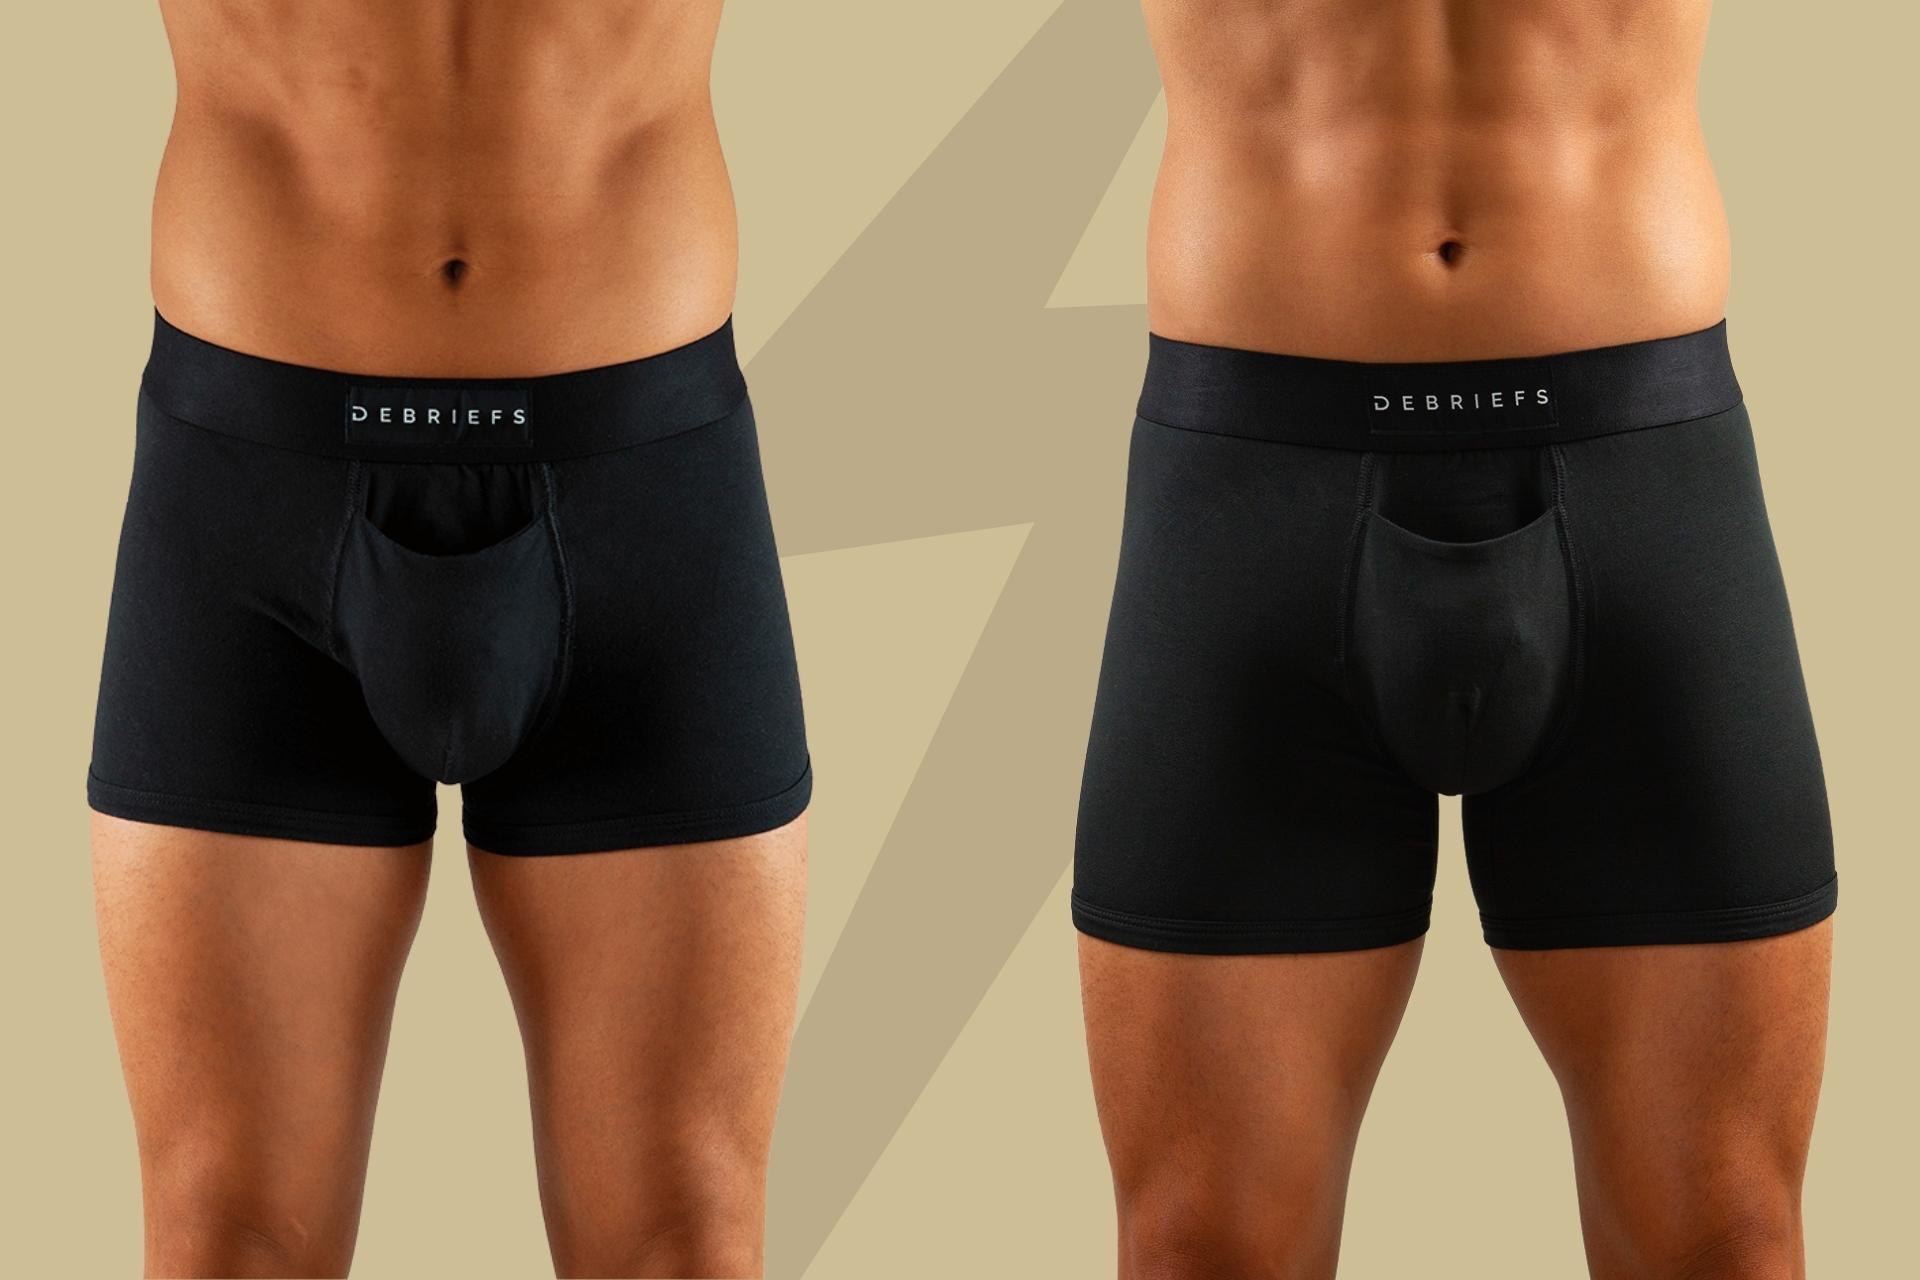 trunks or boxer briefs - Debriefs men's underwear